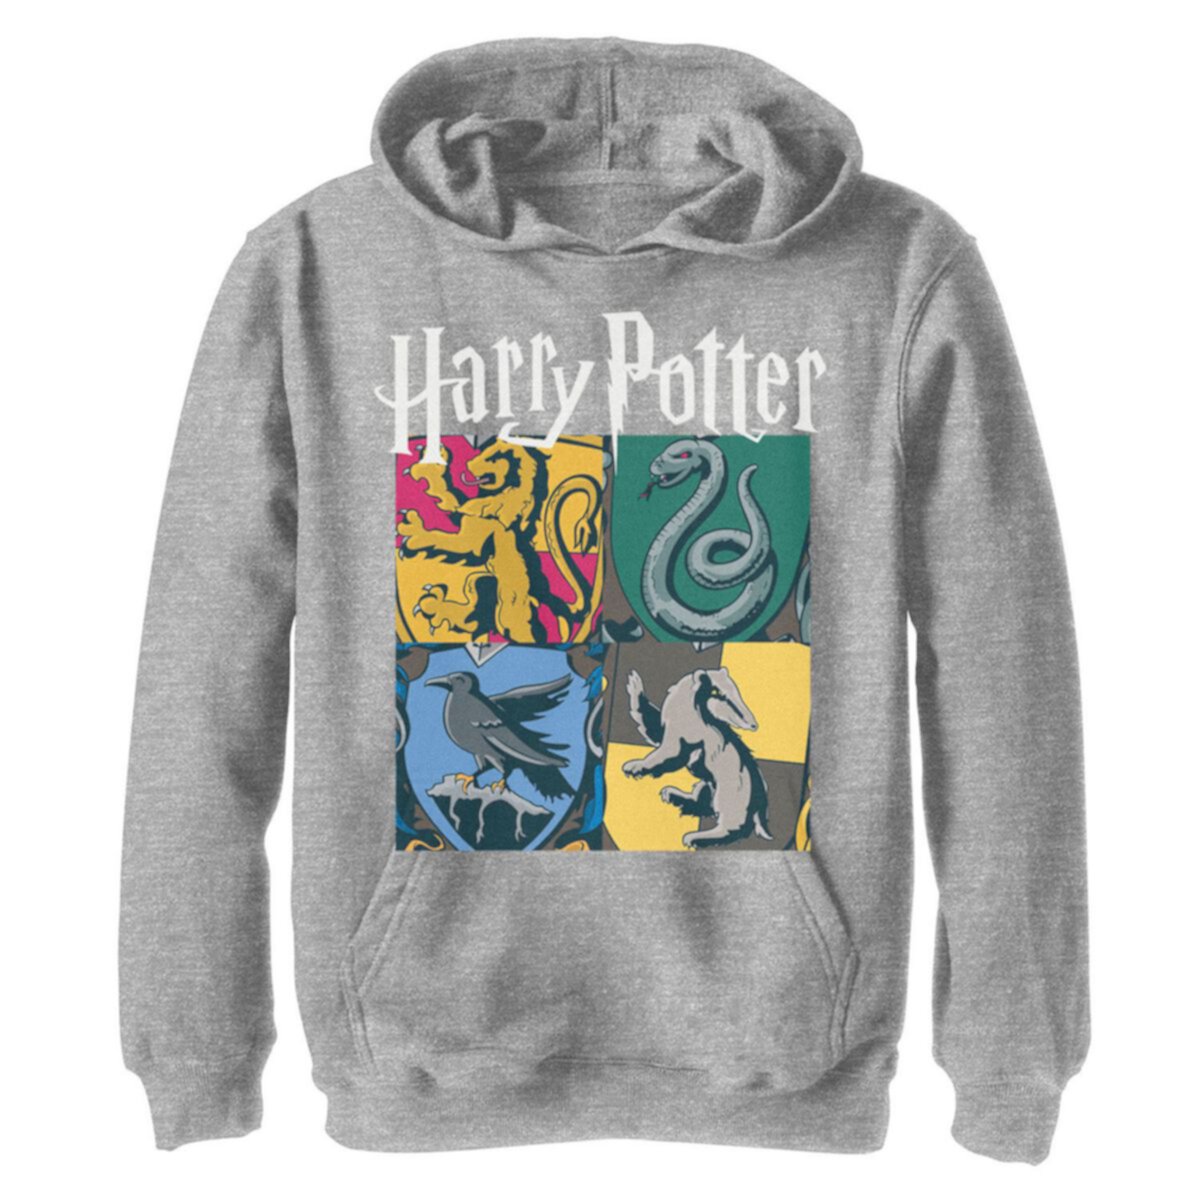 Винтажная толстовка с капюшоном в стиле коллаж для мальчиков 8-20 Гарри Поттер Хогвартс Хаус Harry Potter